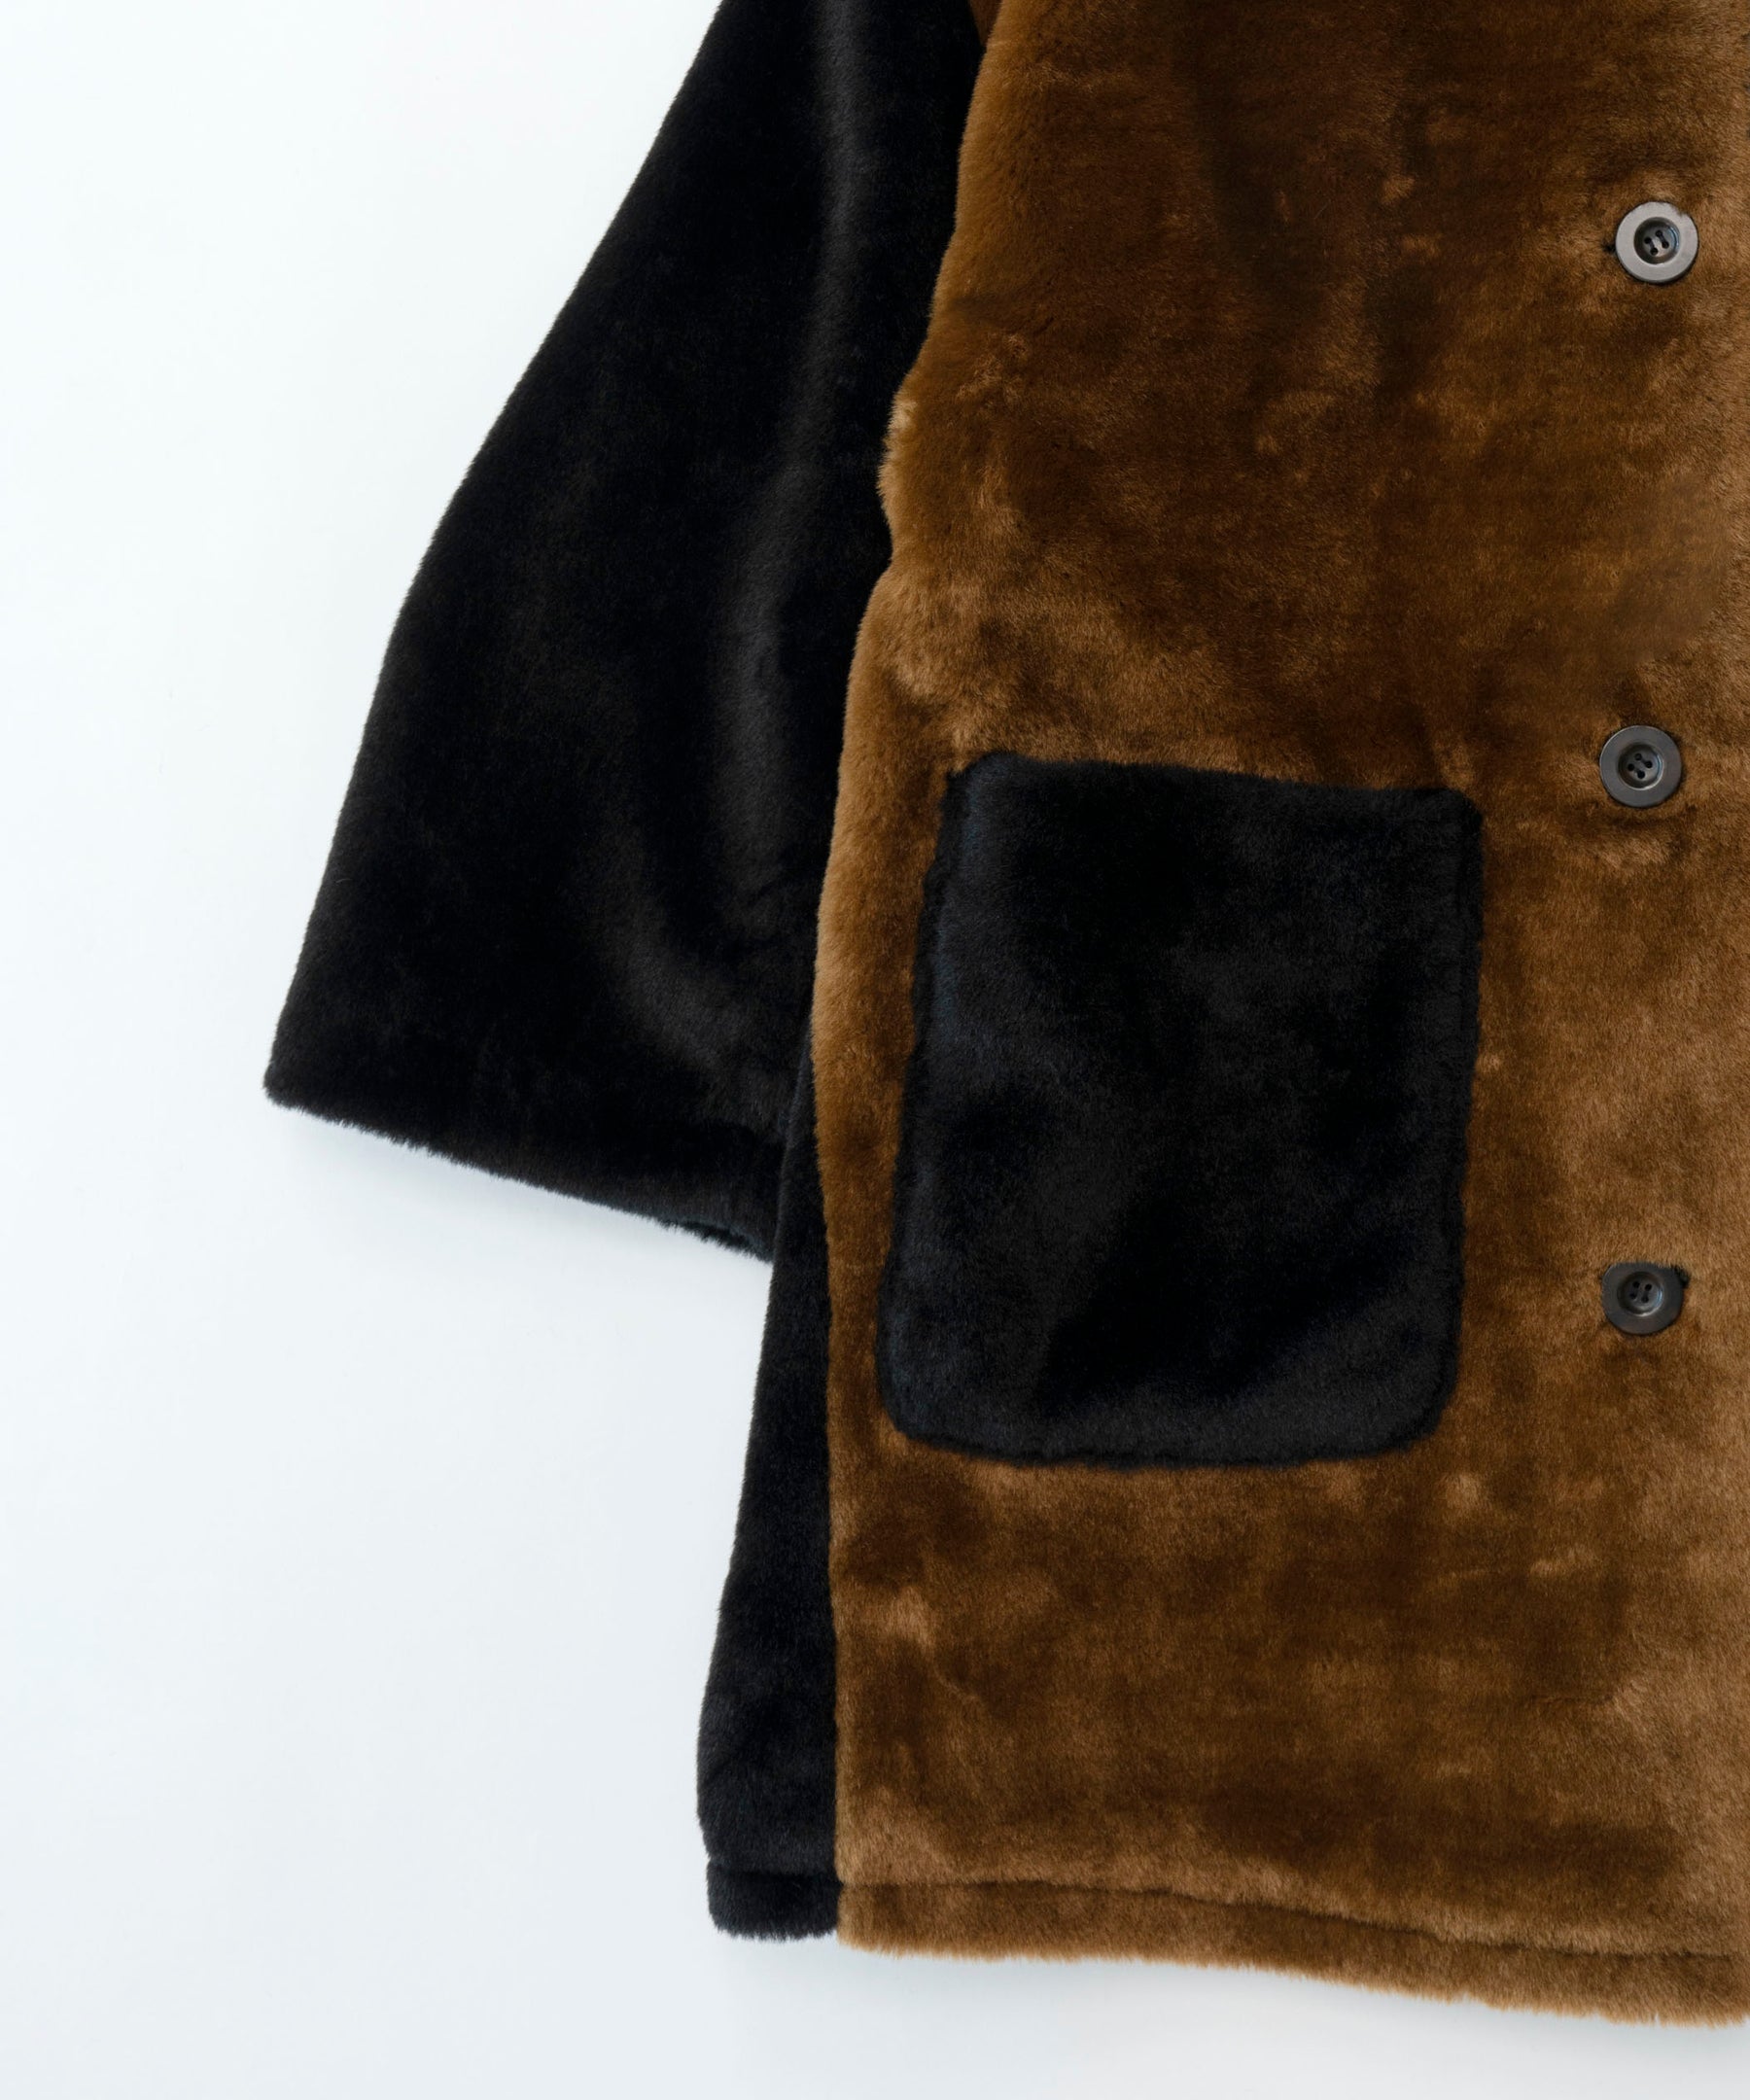 Bicolor Soutien Colored Fur Coat